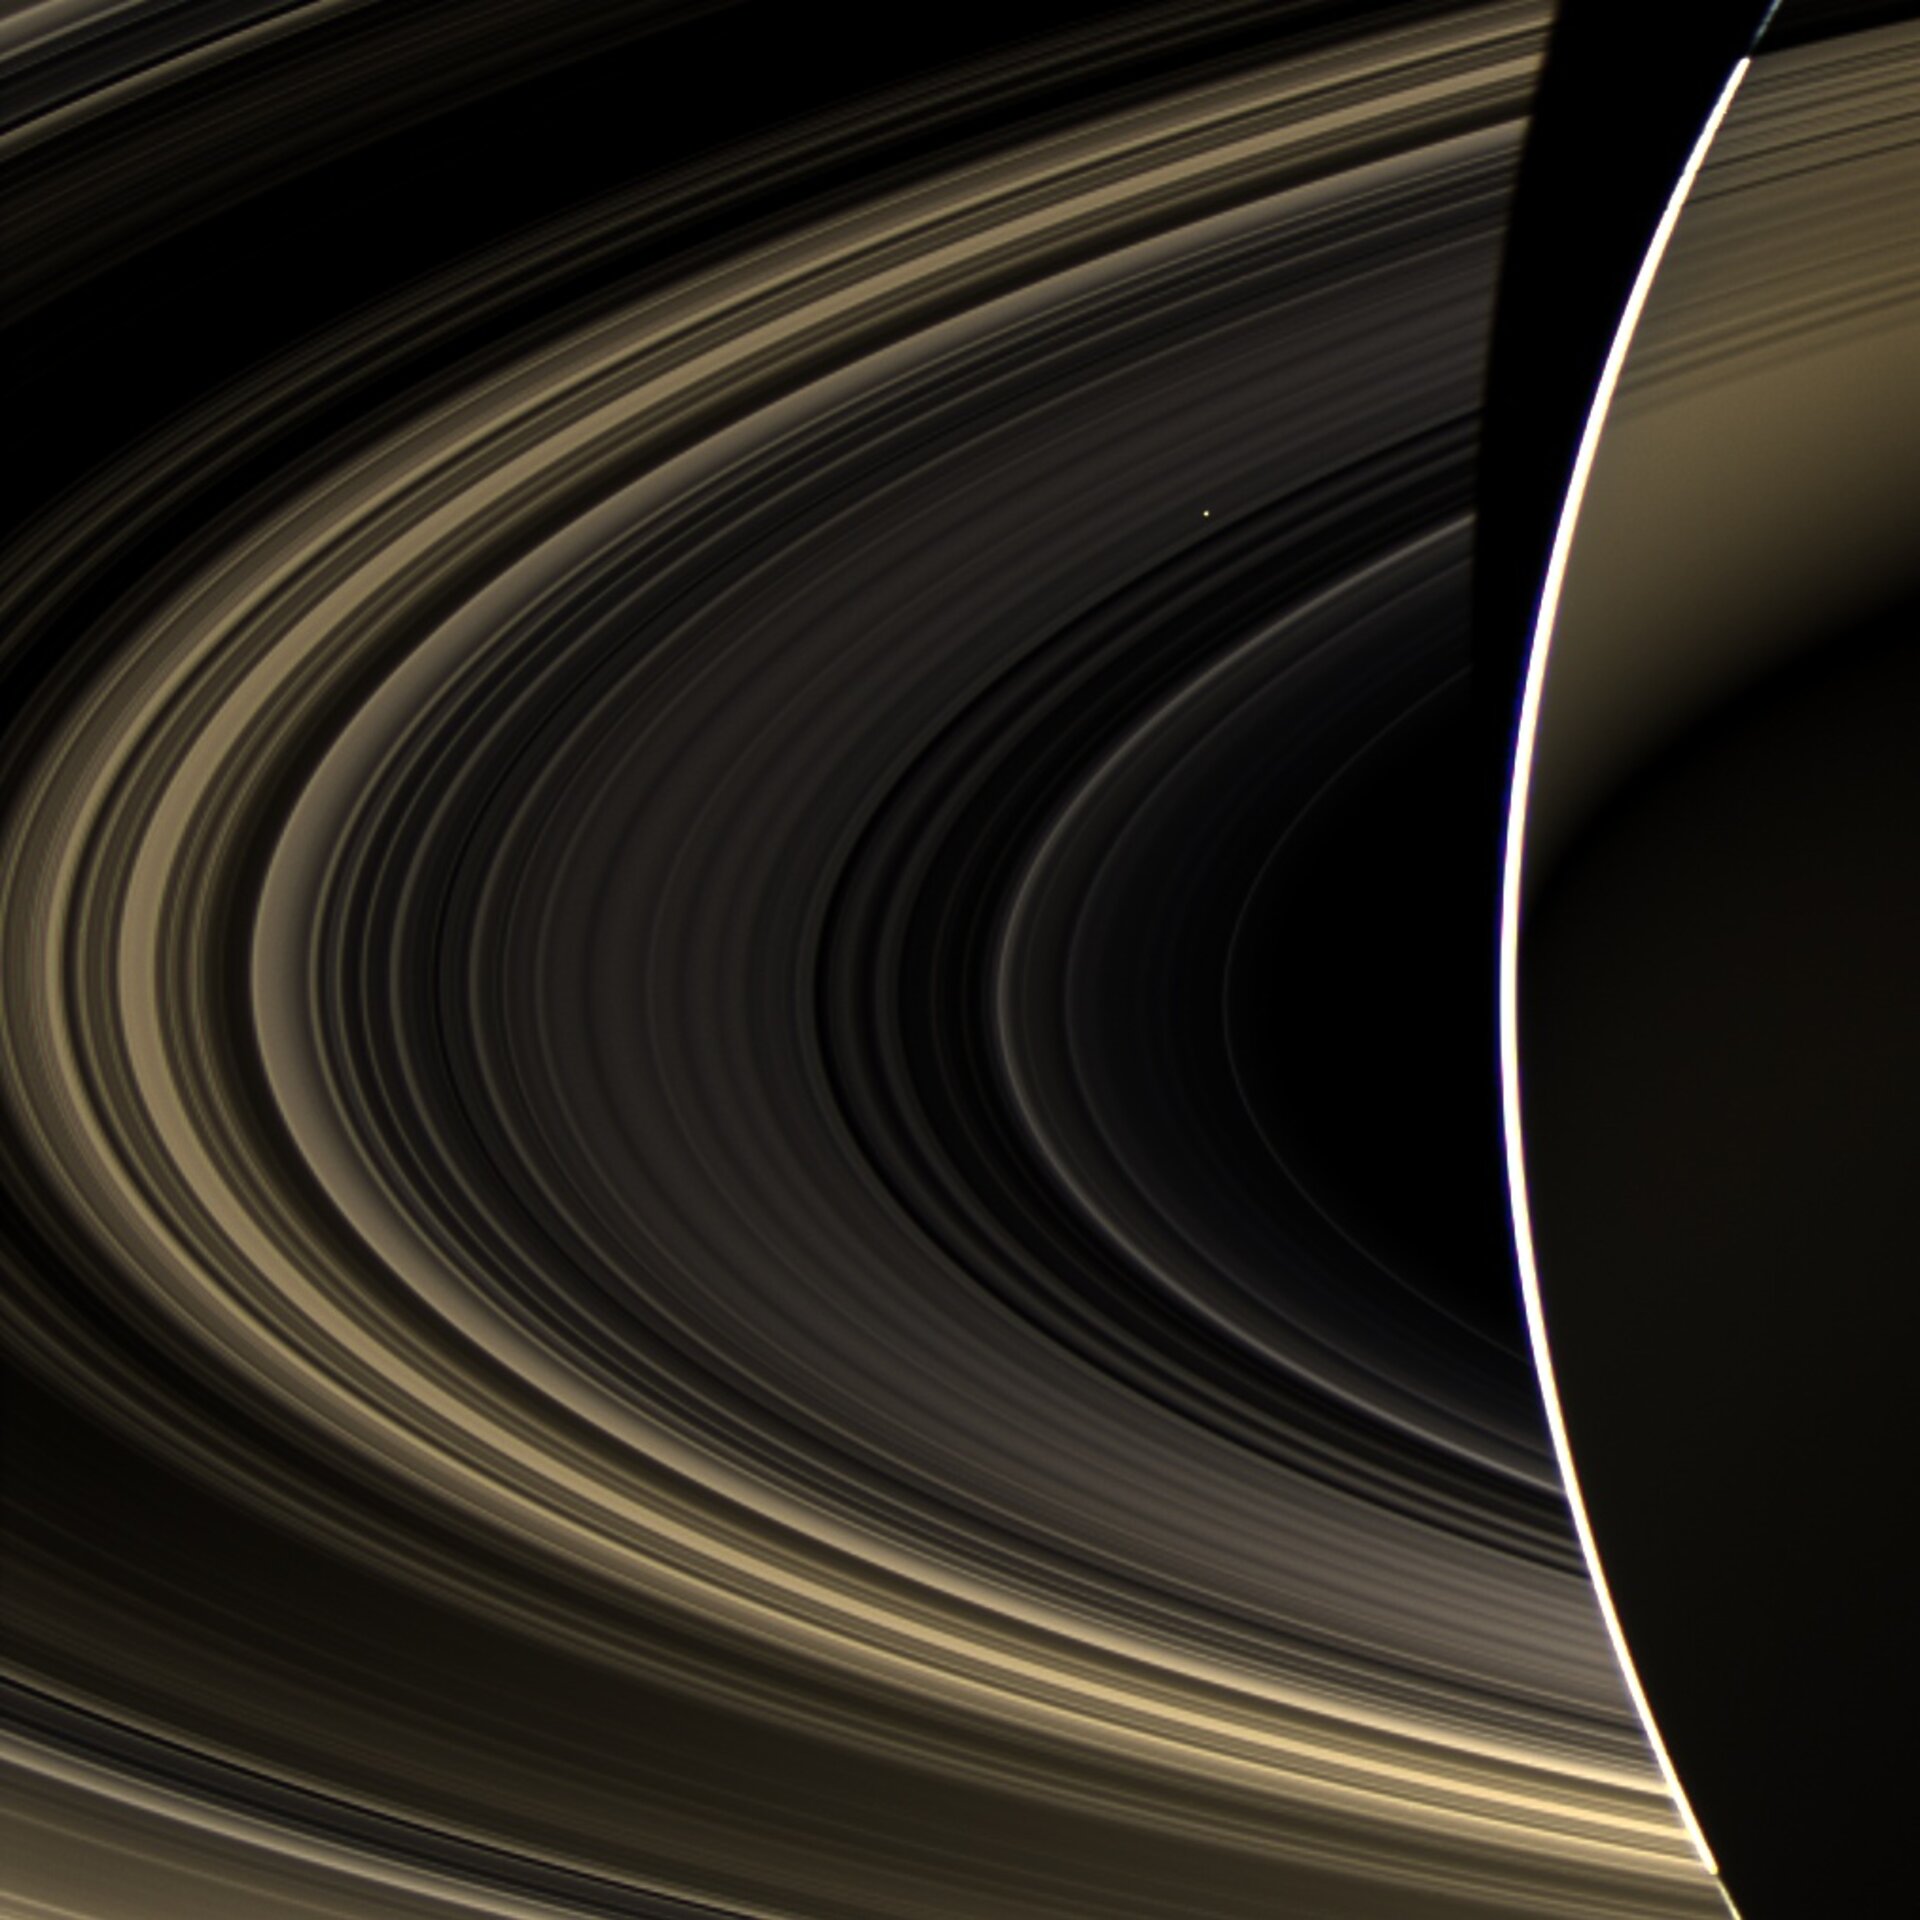 Venuše viděná od planety Saturn